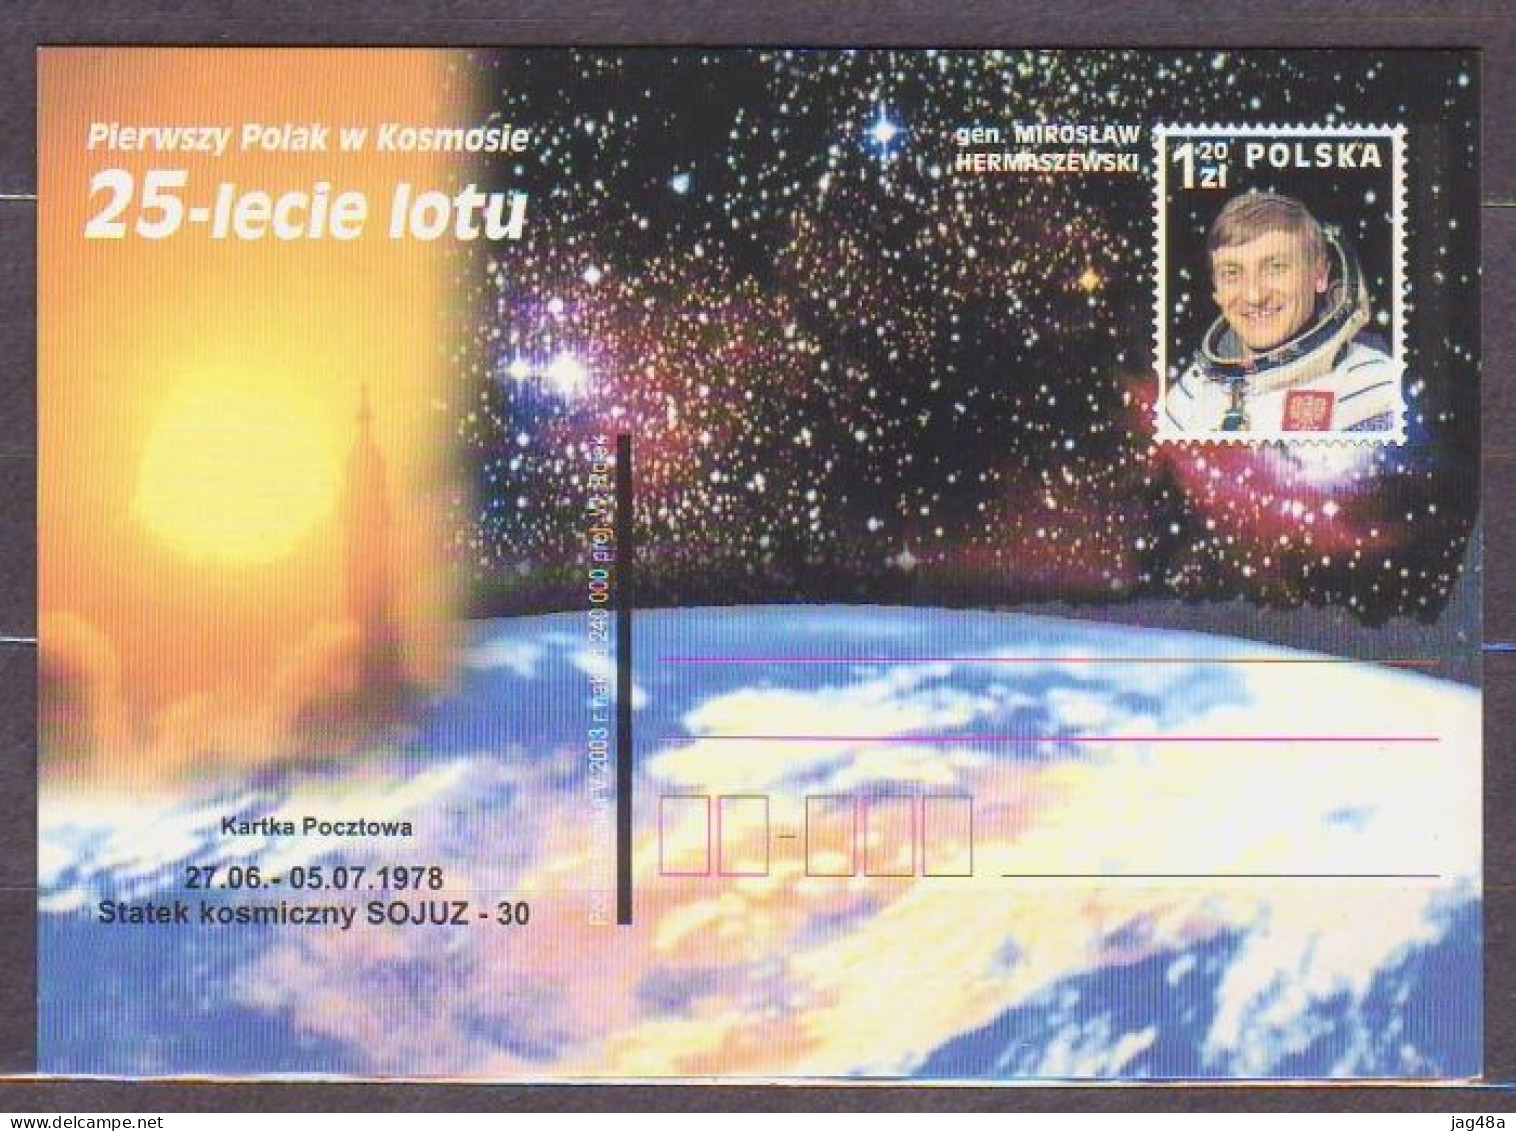 POLAND..2003/Mirosław Hermaszewski - 25th Anniversary Spaceflight,Soyuz30.. PostCard/unused. - Covers & Documents